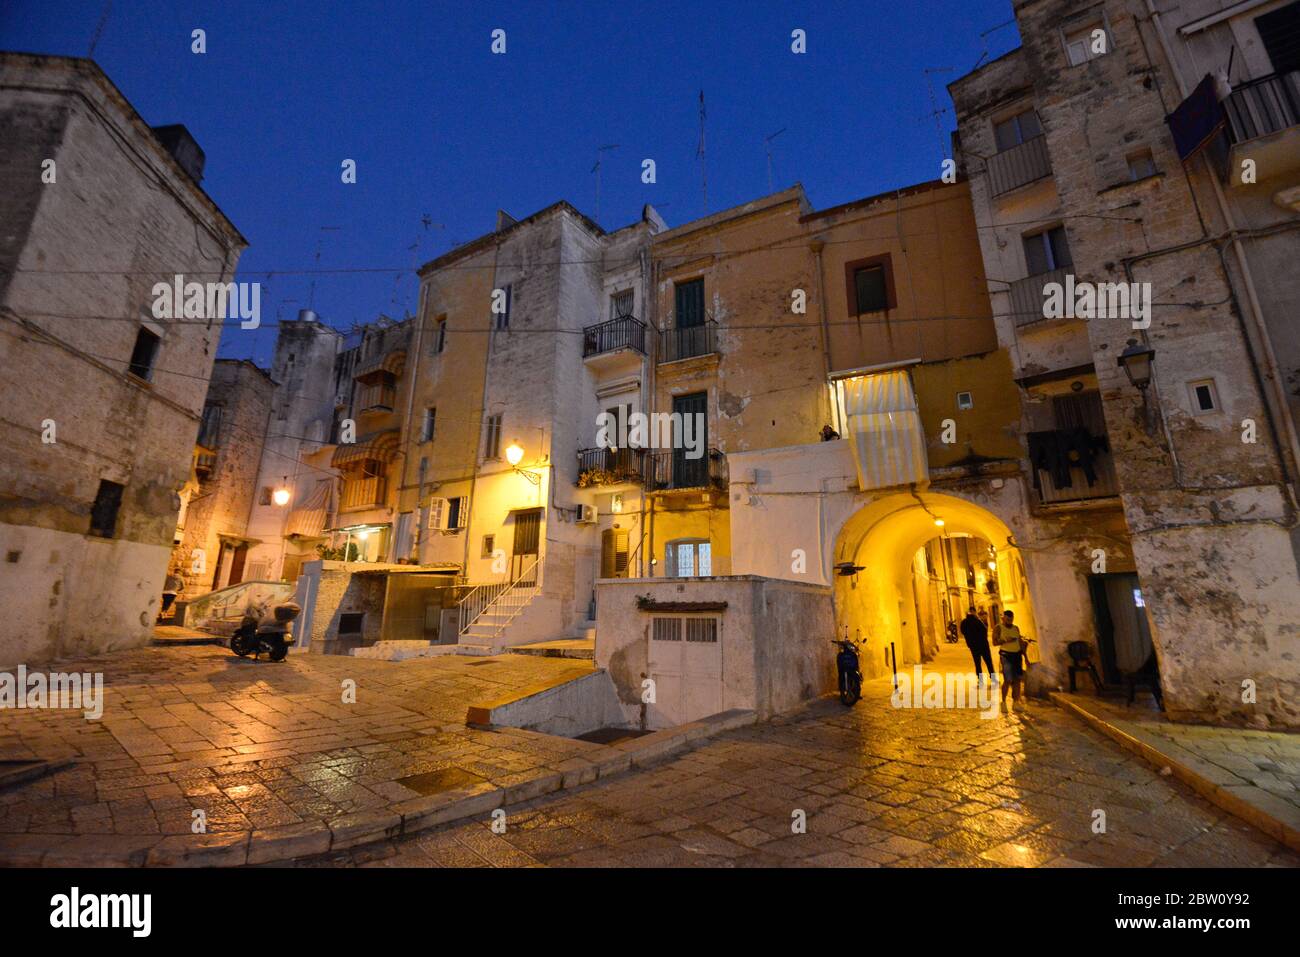 Vieille ville de Bari (Citta Vecchia) au crépuscule, Italie Banque D'Images